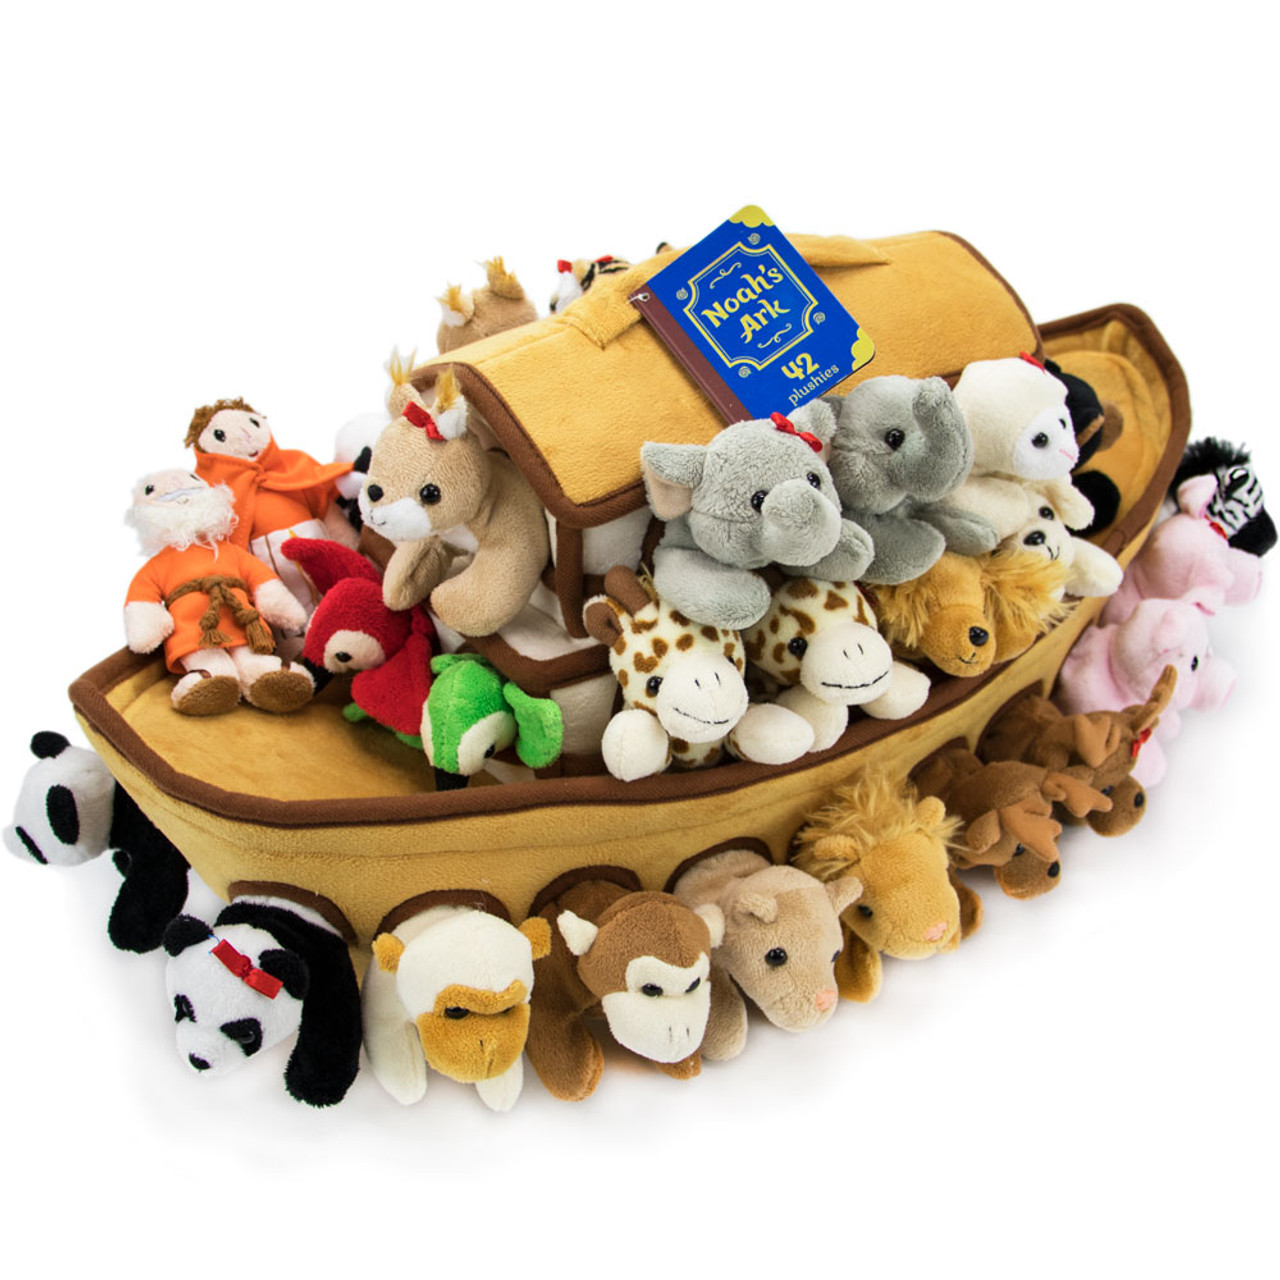 noah's ark stuffed animals